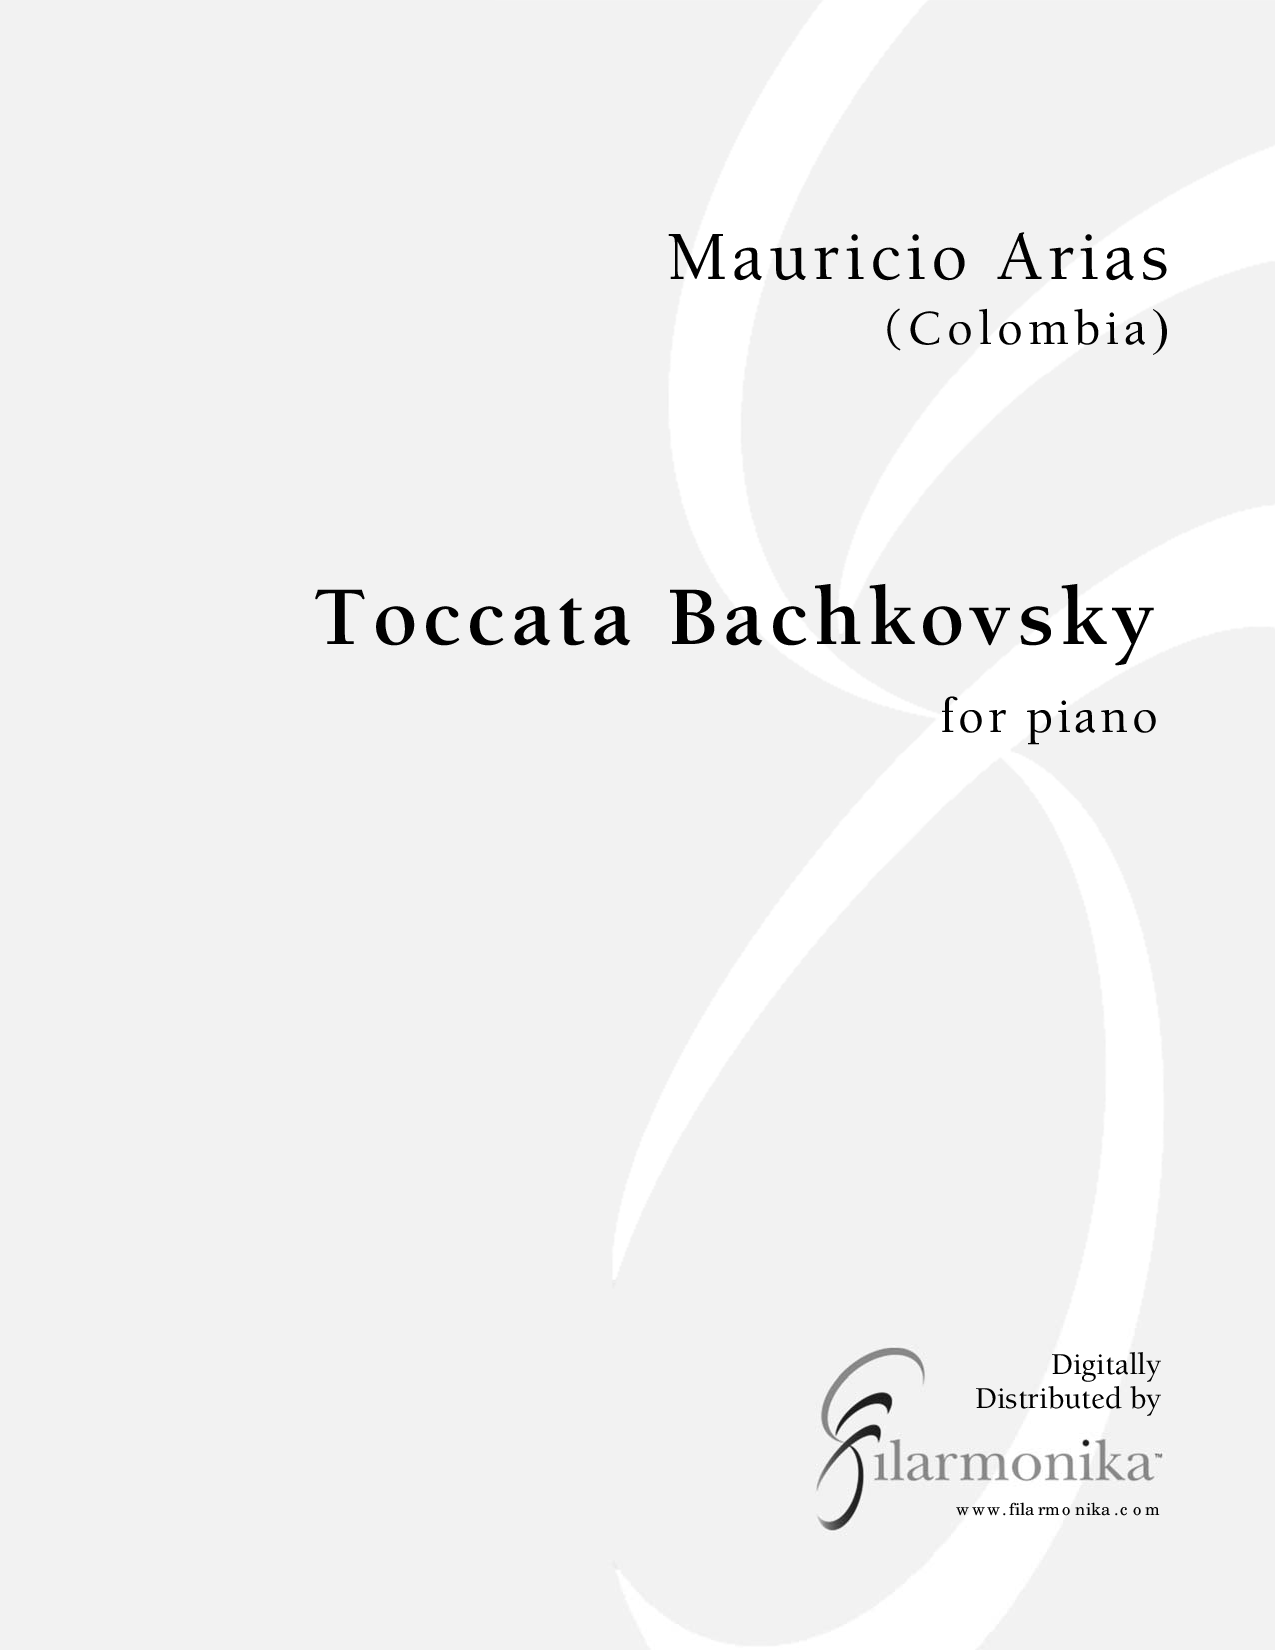 Toccata Bachkovsky, for solo piano